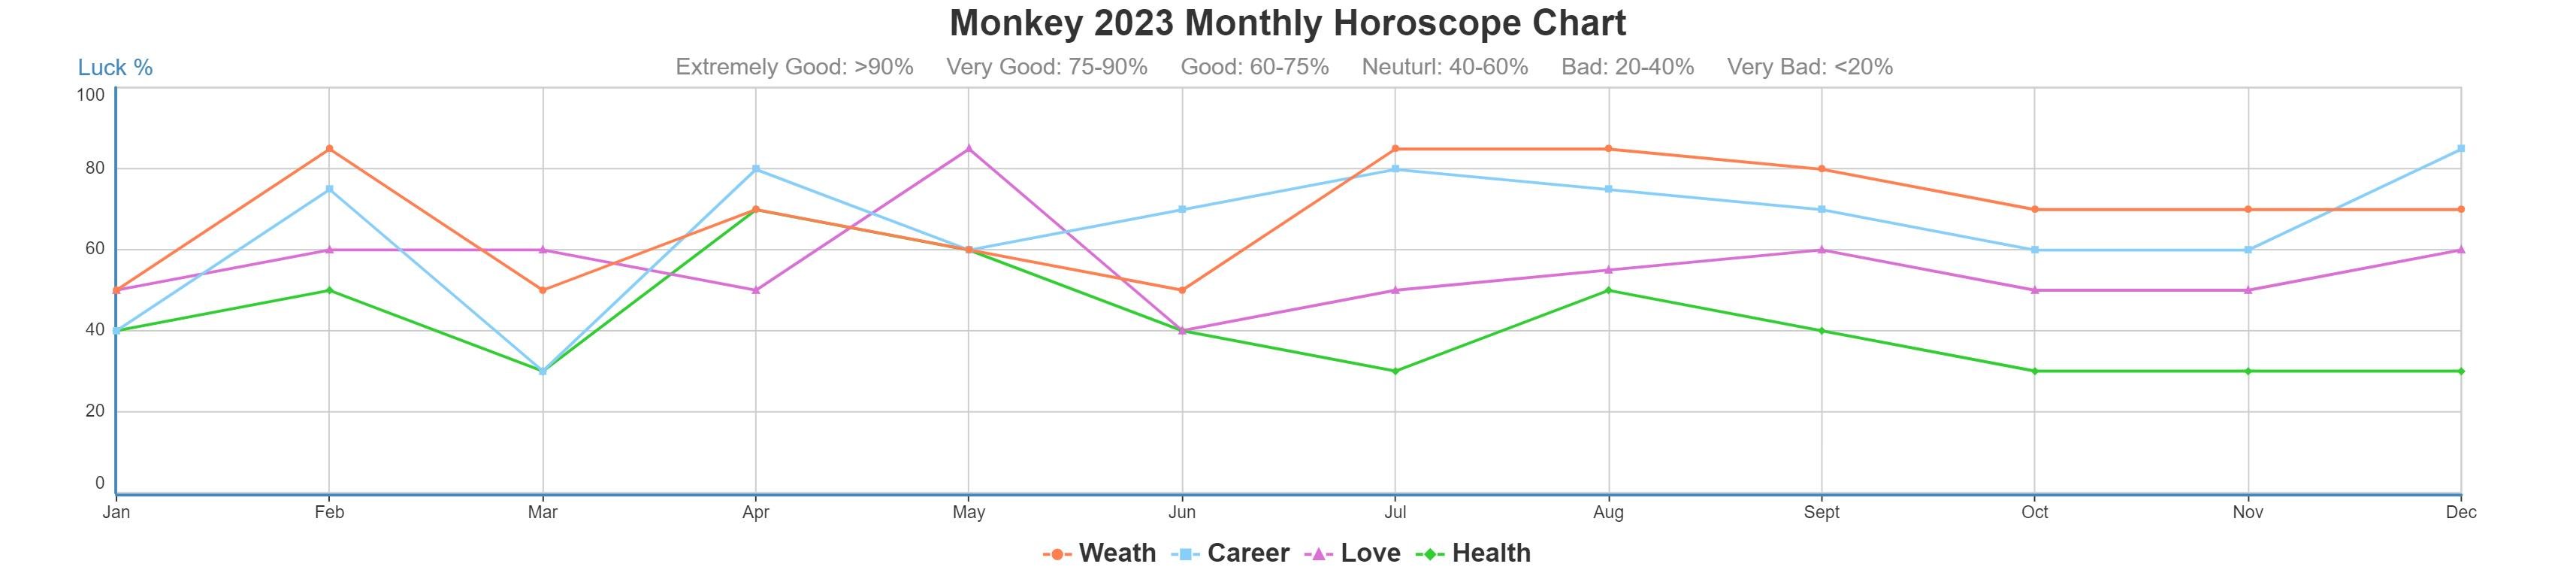 Monkey 2023 monthly horoscope